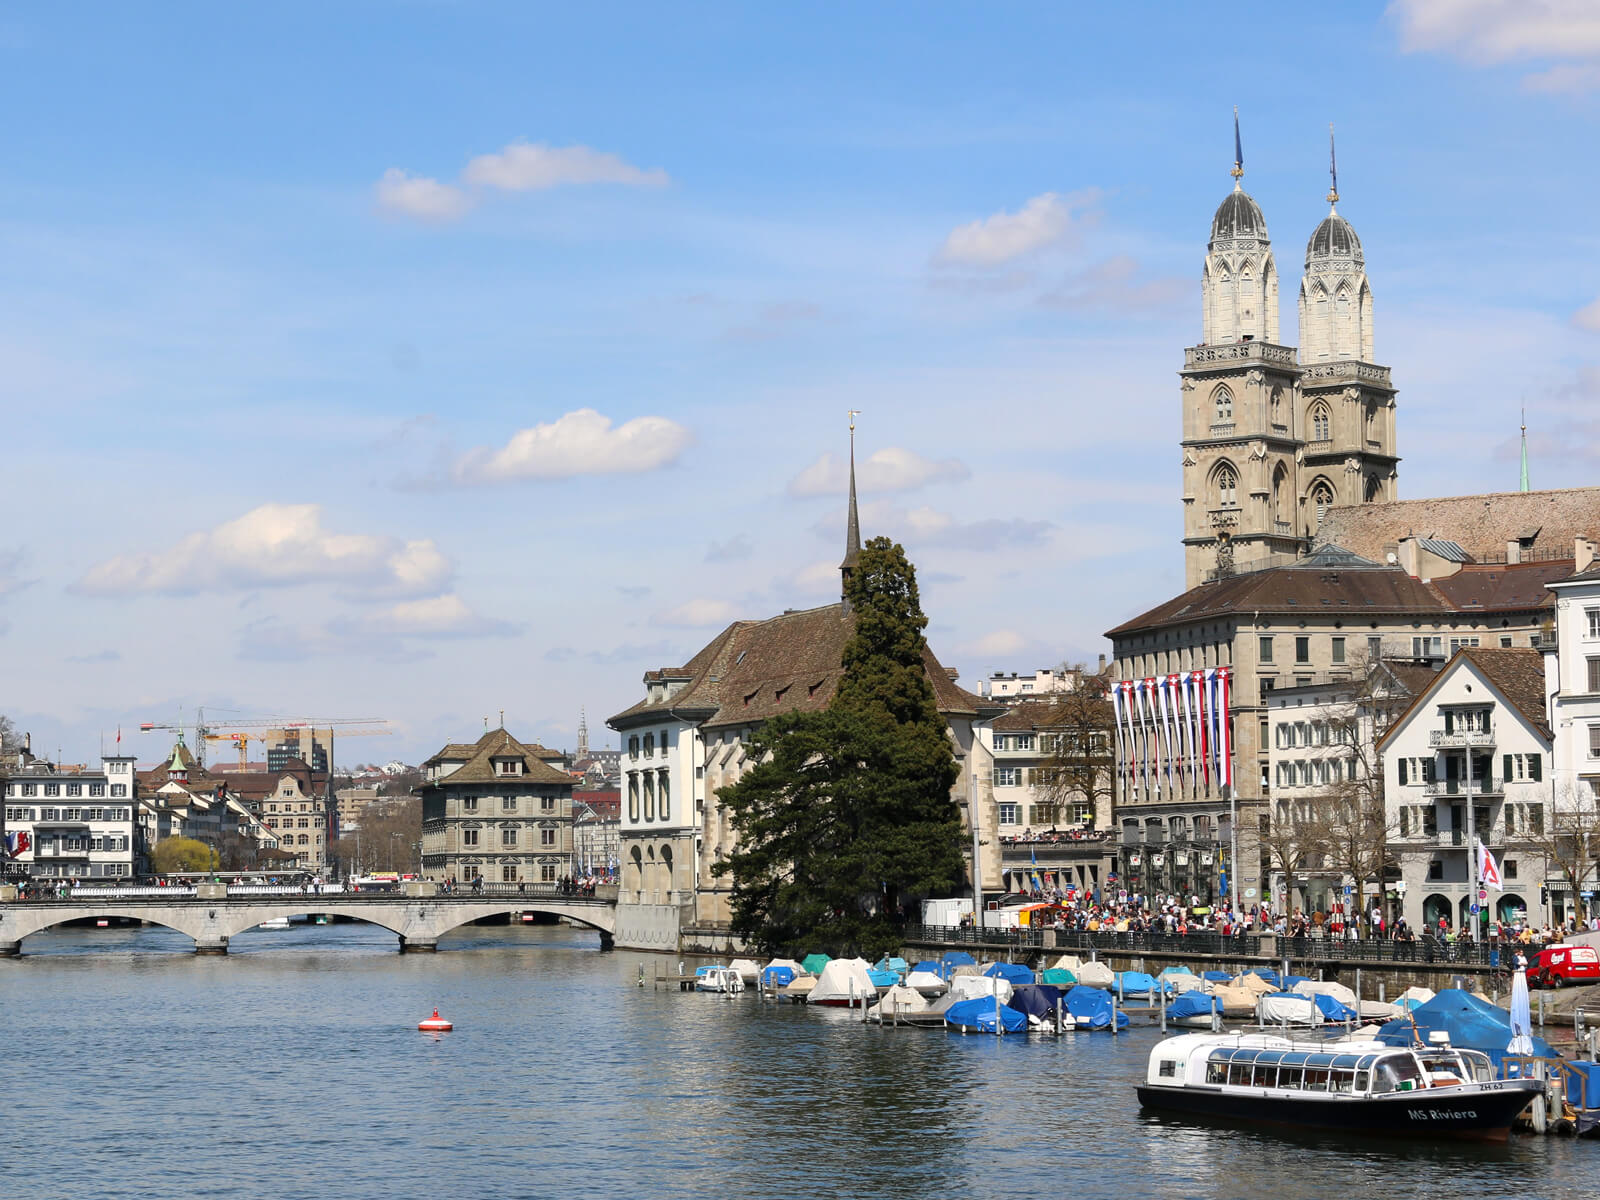 Limmat River in Zurich Switzerland - Best Free Museums in Zurich